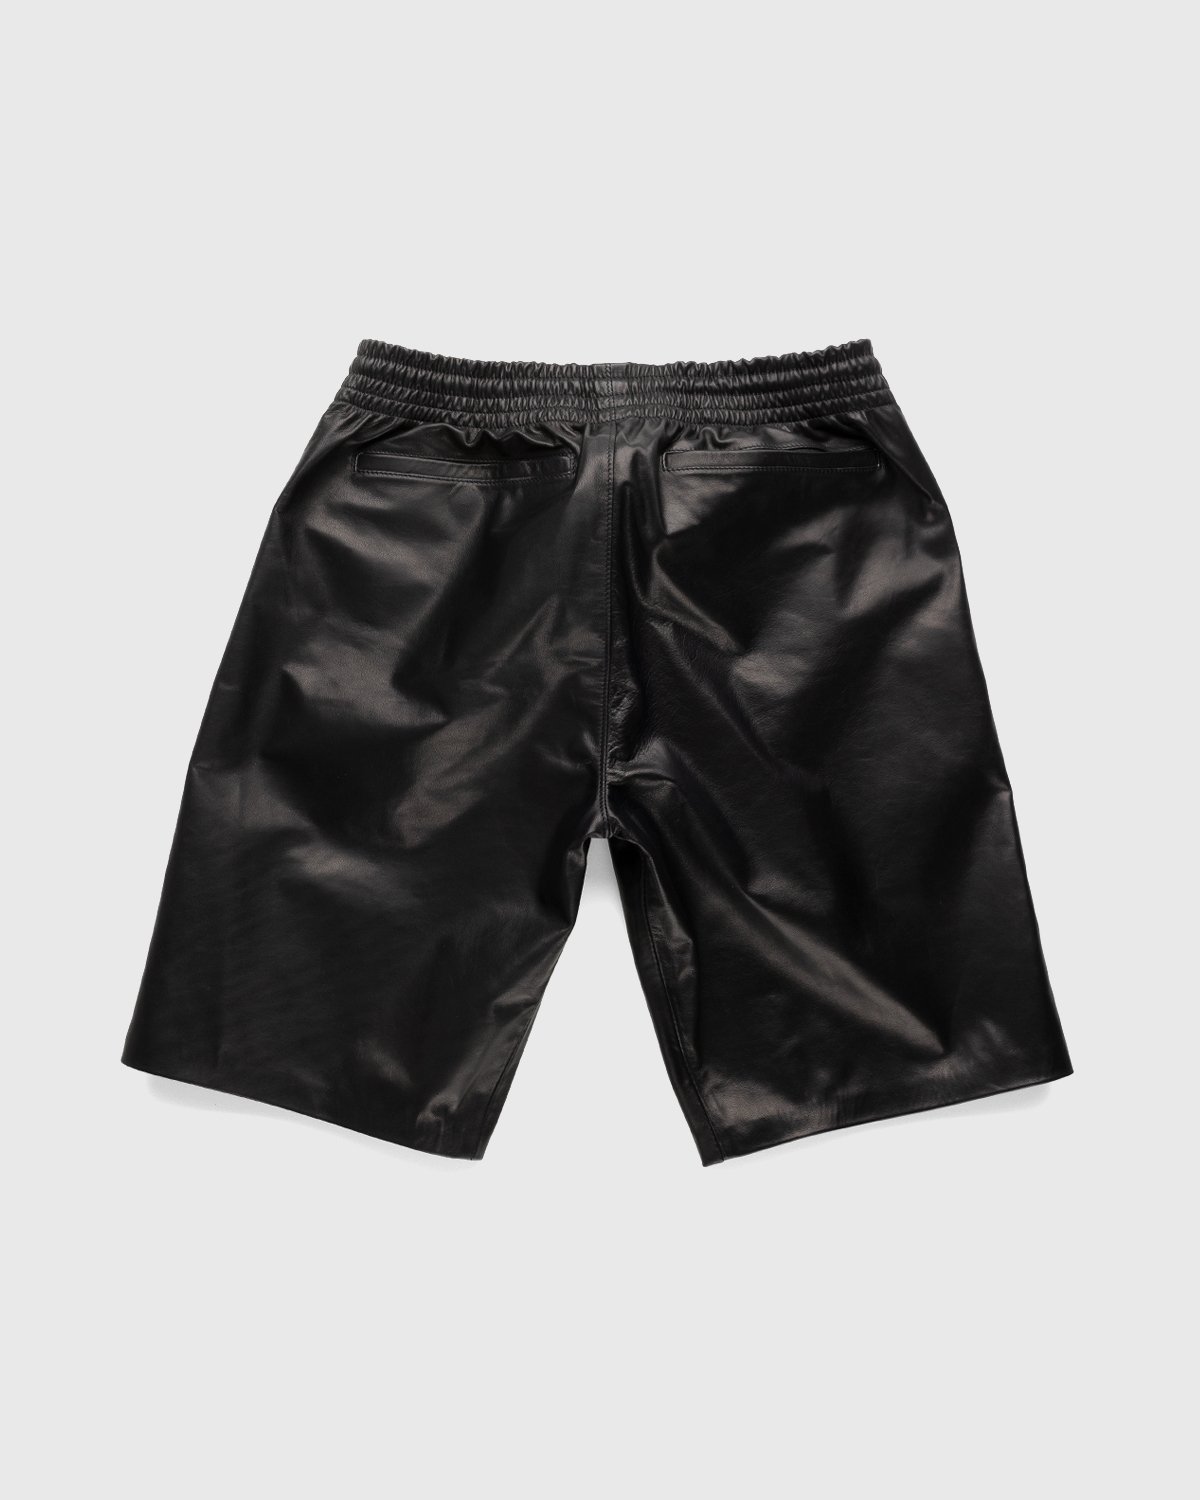 Highsnobiety x Butcherei Lindinger - Shorts Black - Clothing - Black - Image 2